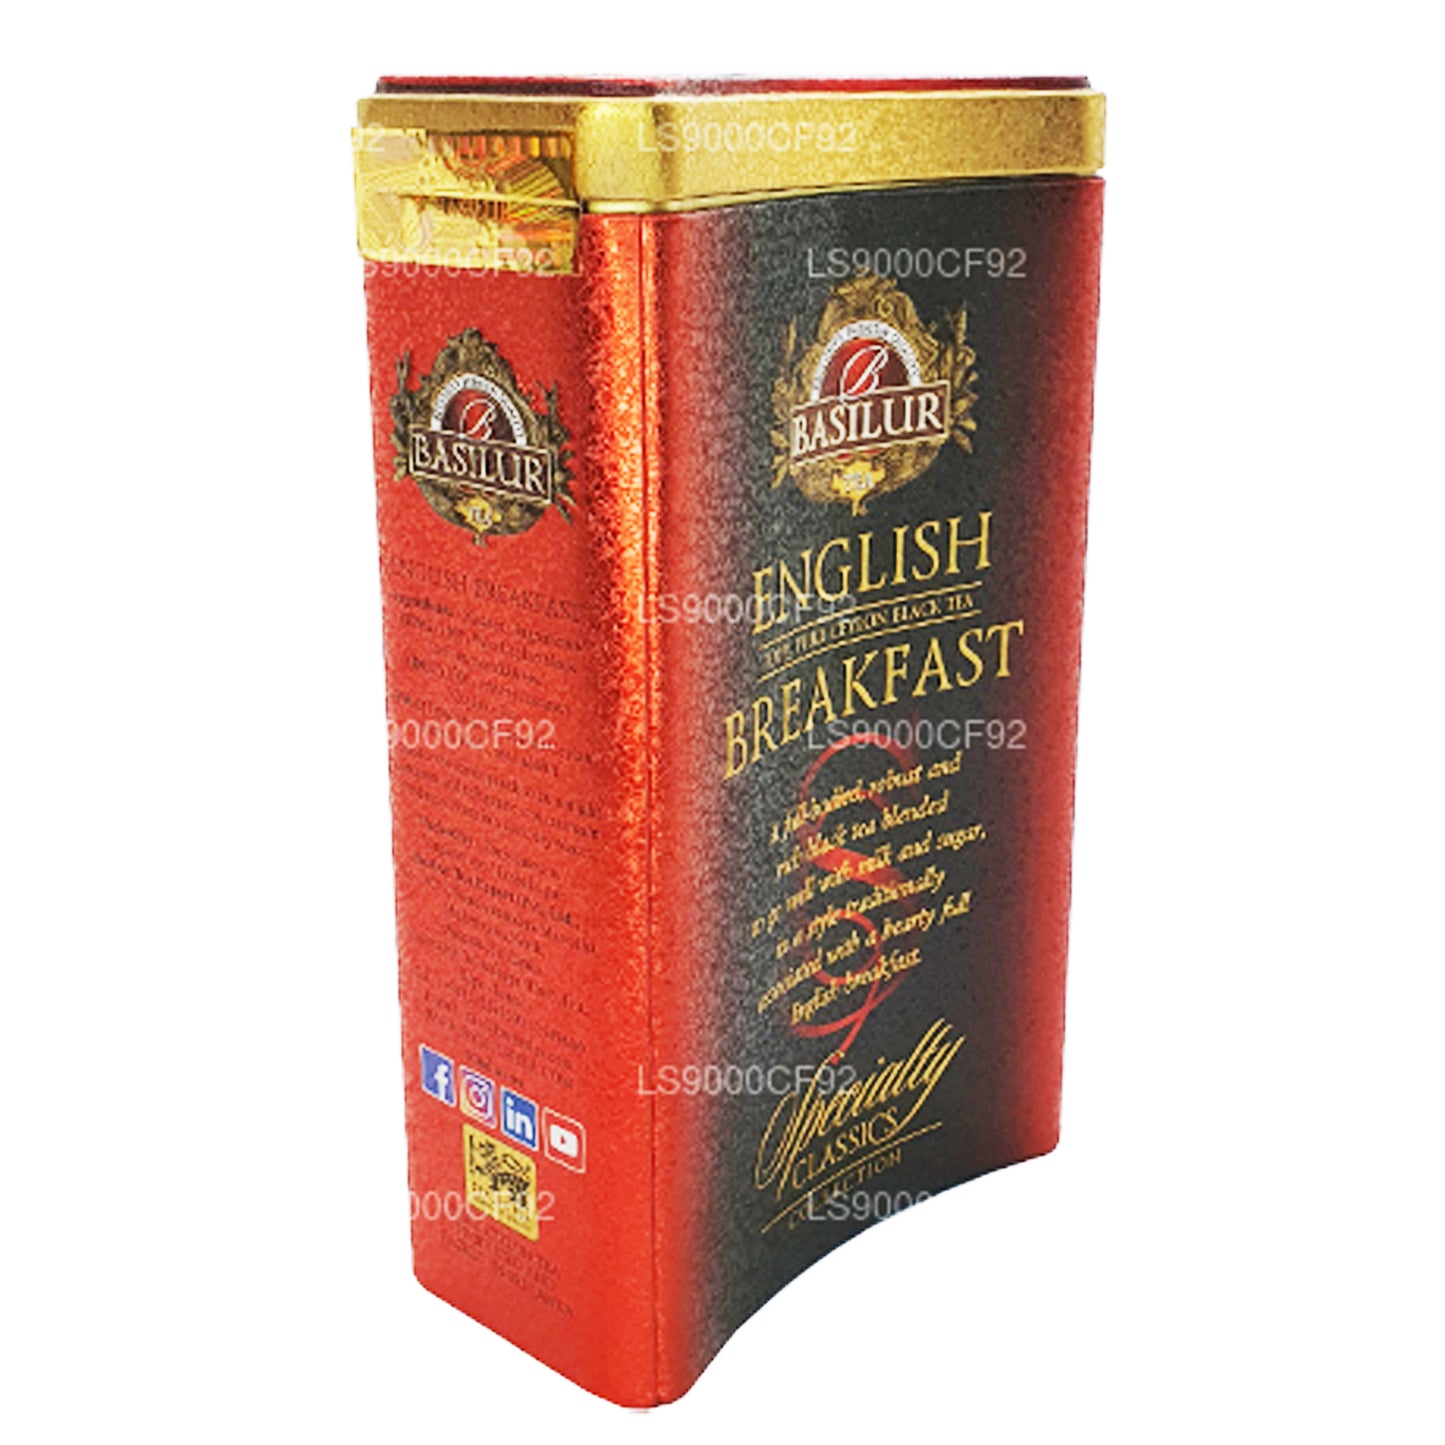 Basilur Specialty Classics English Breakfast caddy (100g)